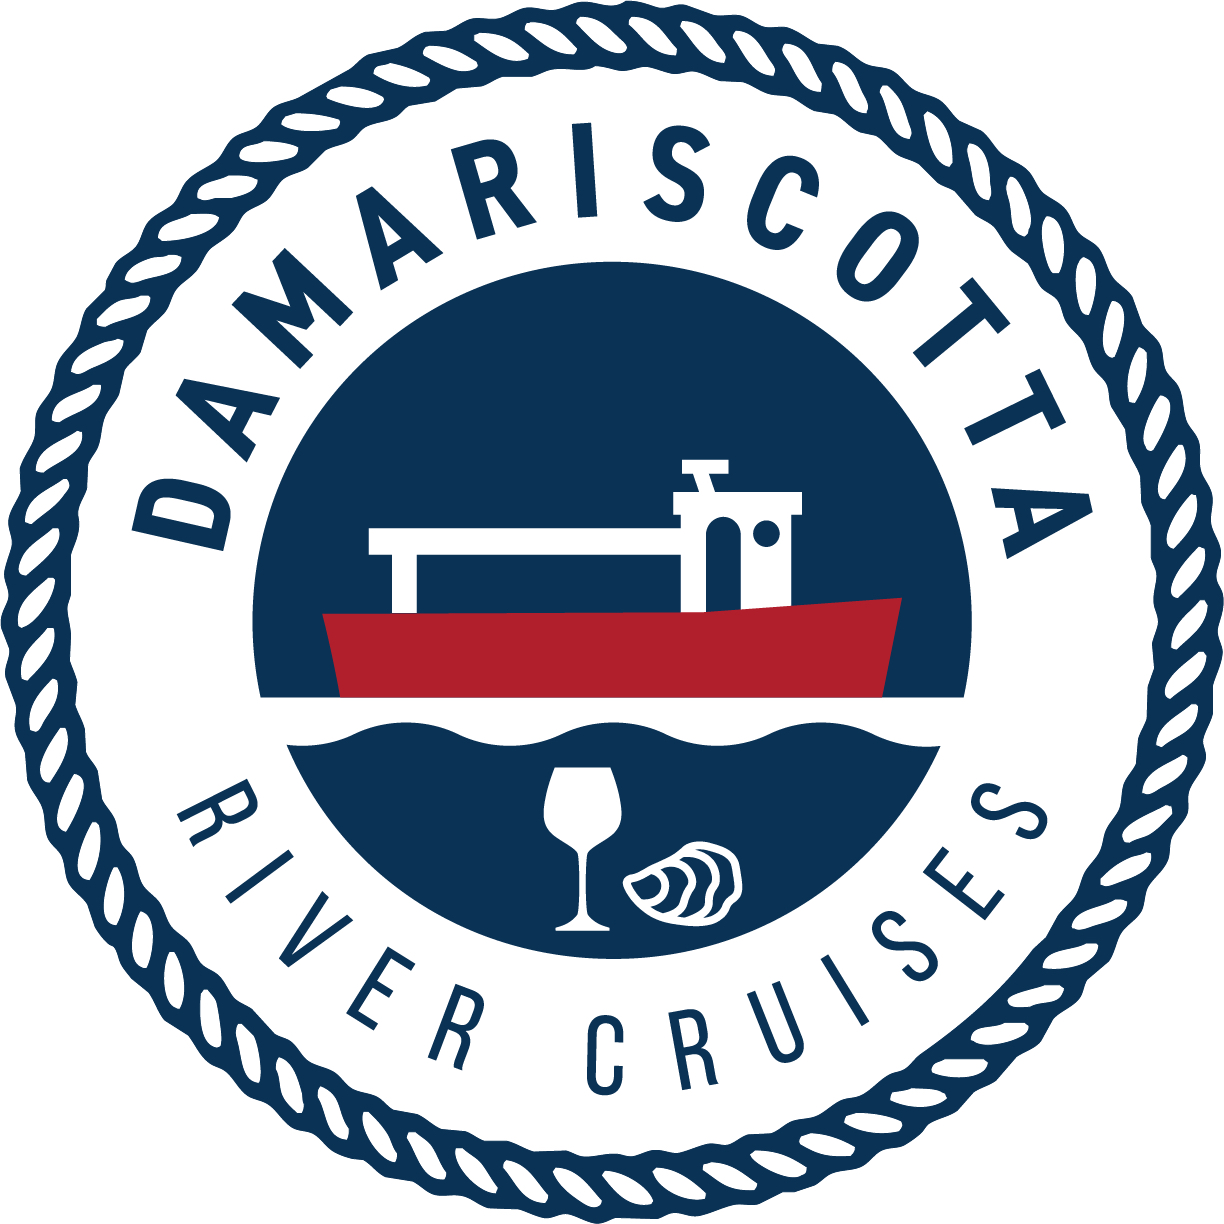 Damariscotta River Cruises